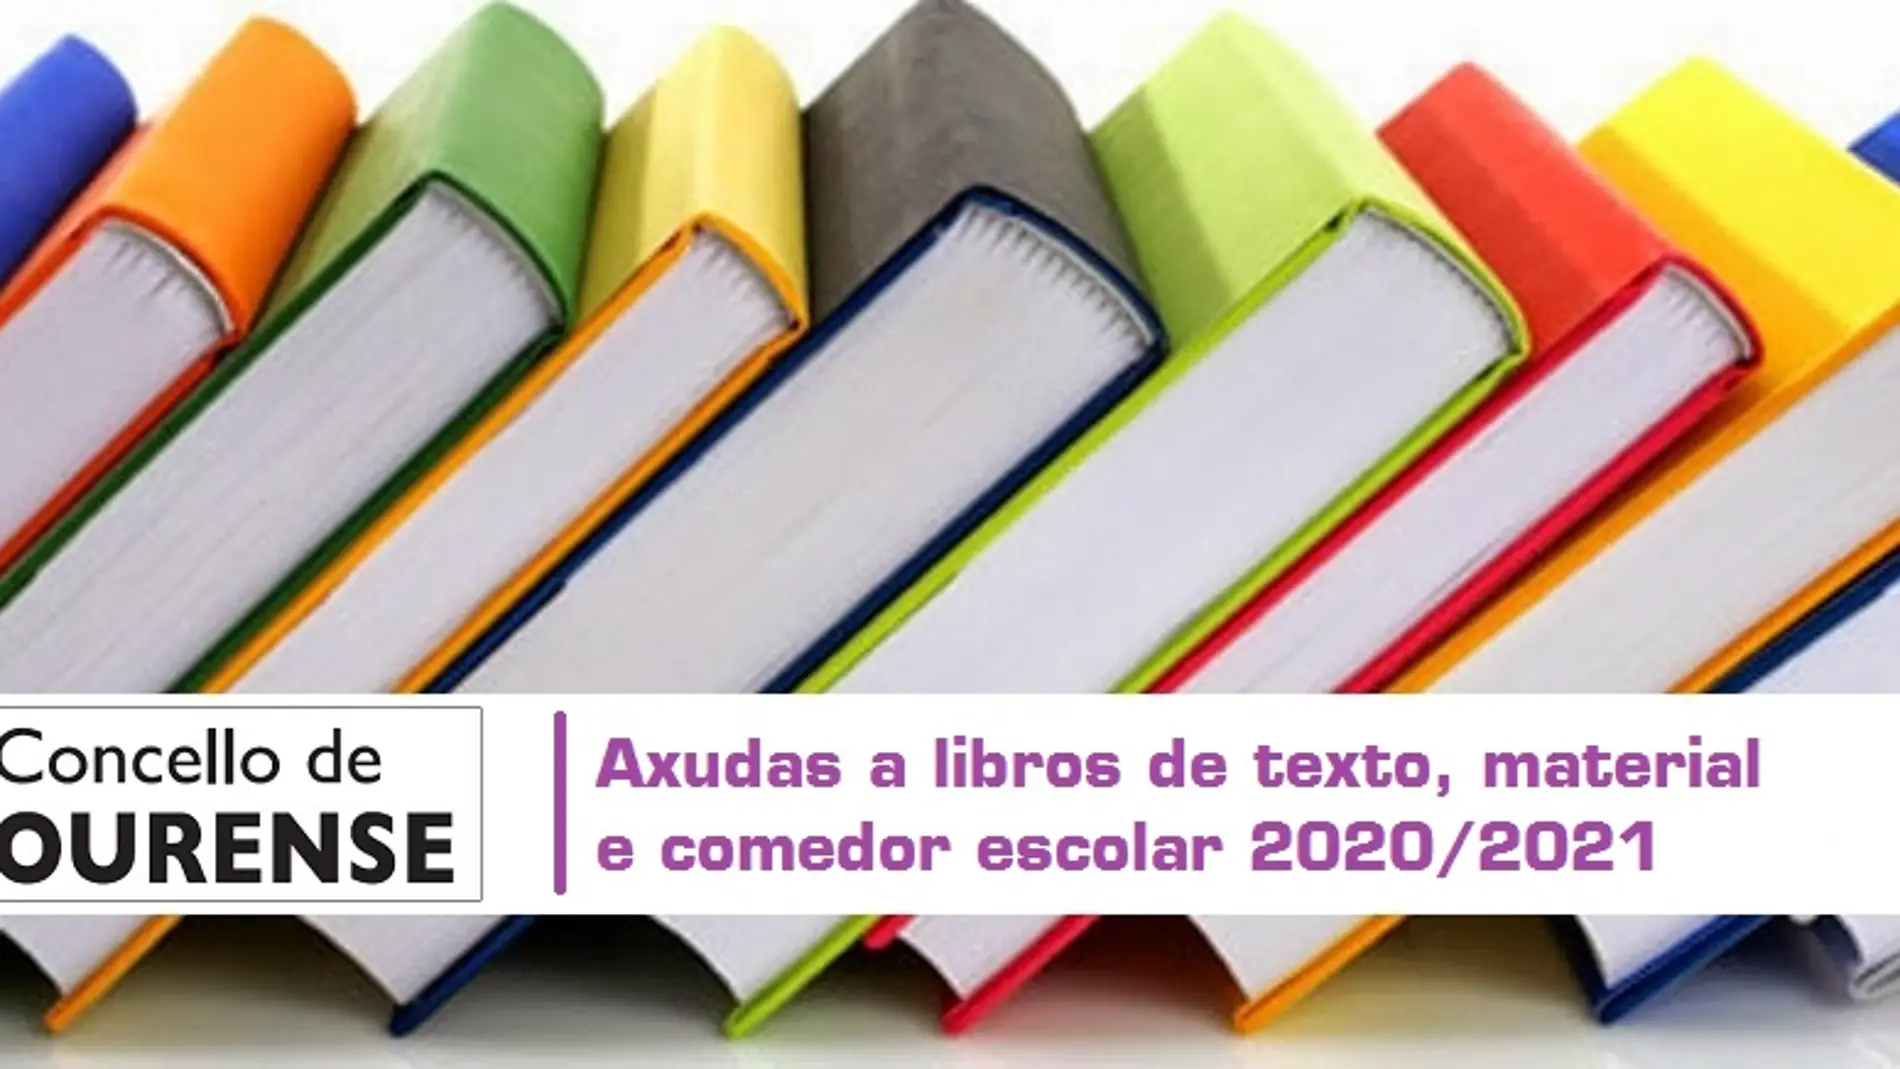 O Concello entregará 236.000 euros en axudas para libros, material escolar e comedores